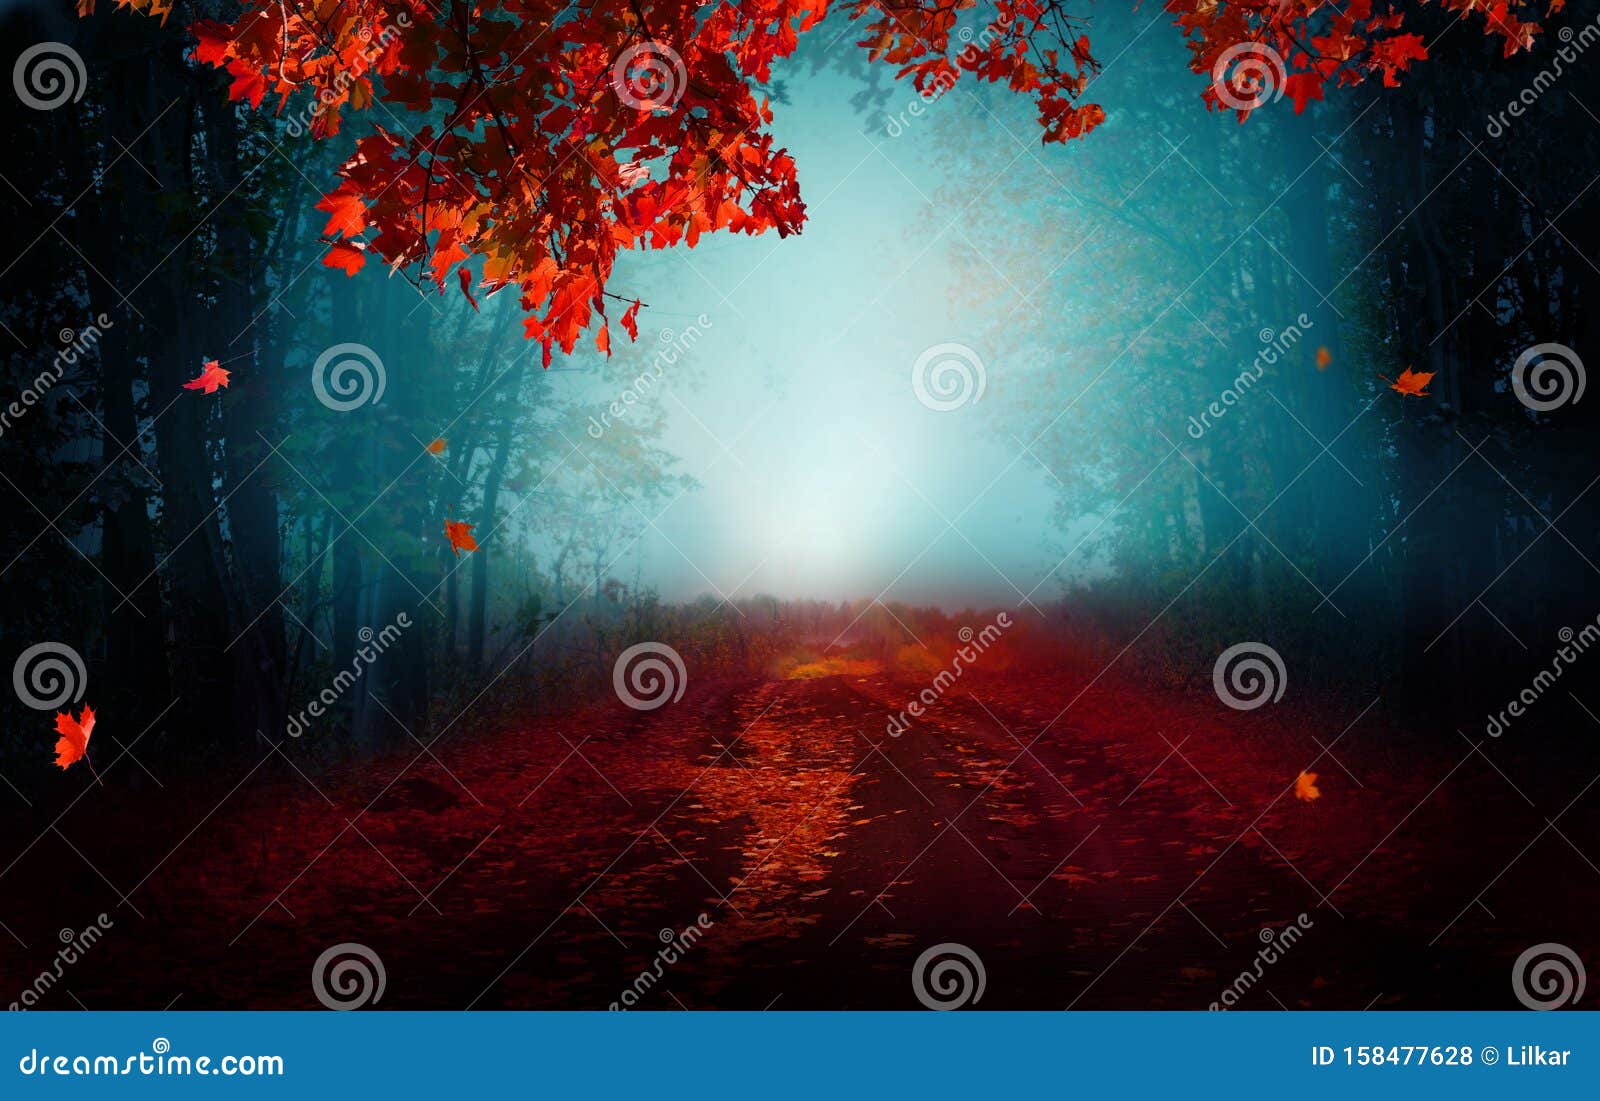 幻想背景魔法森林美丽的秋季风景库存照片 图片包括有魔法森林美丽的秋季风景 幻想背景